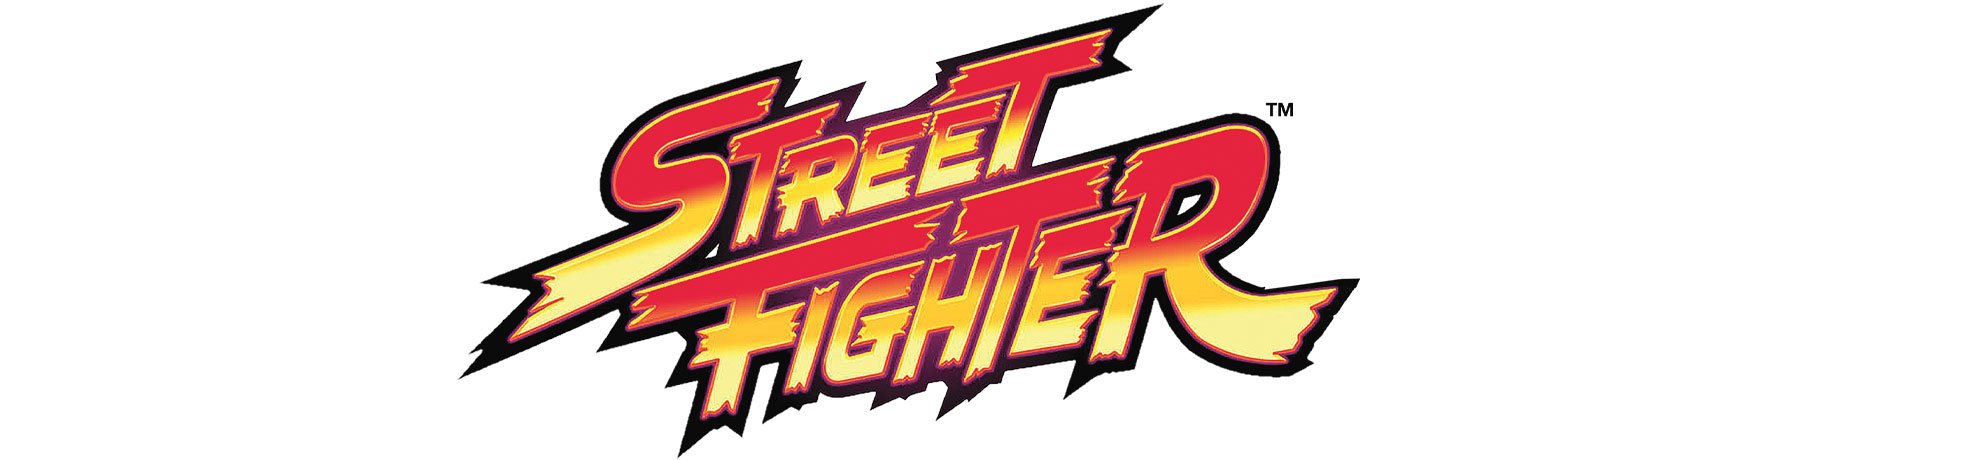 STREET FIGHTER II #1+0 CVR A - Online Exclusive